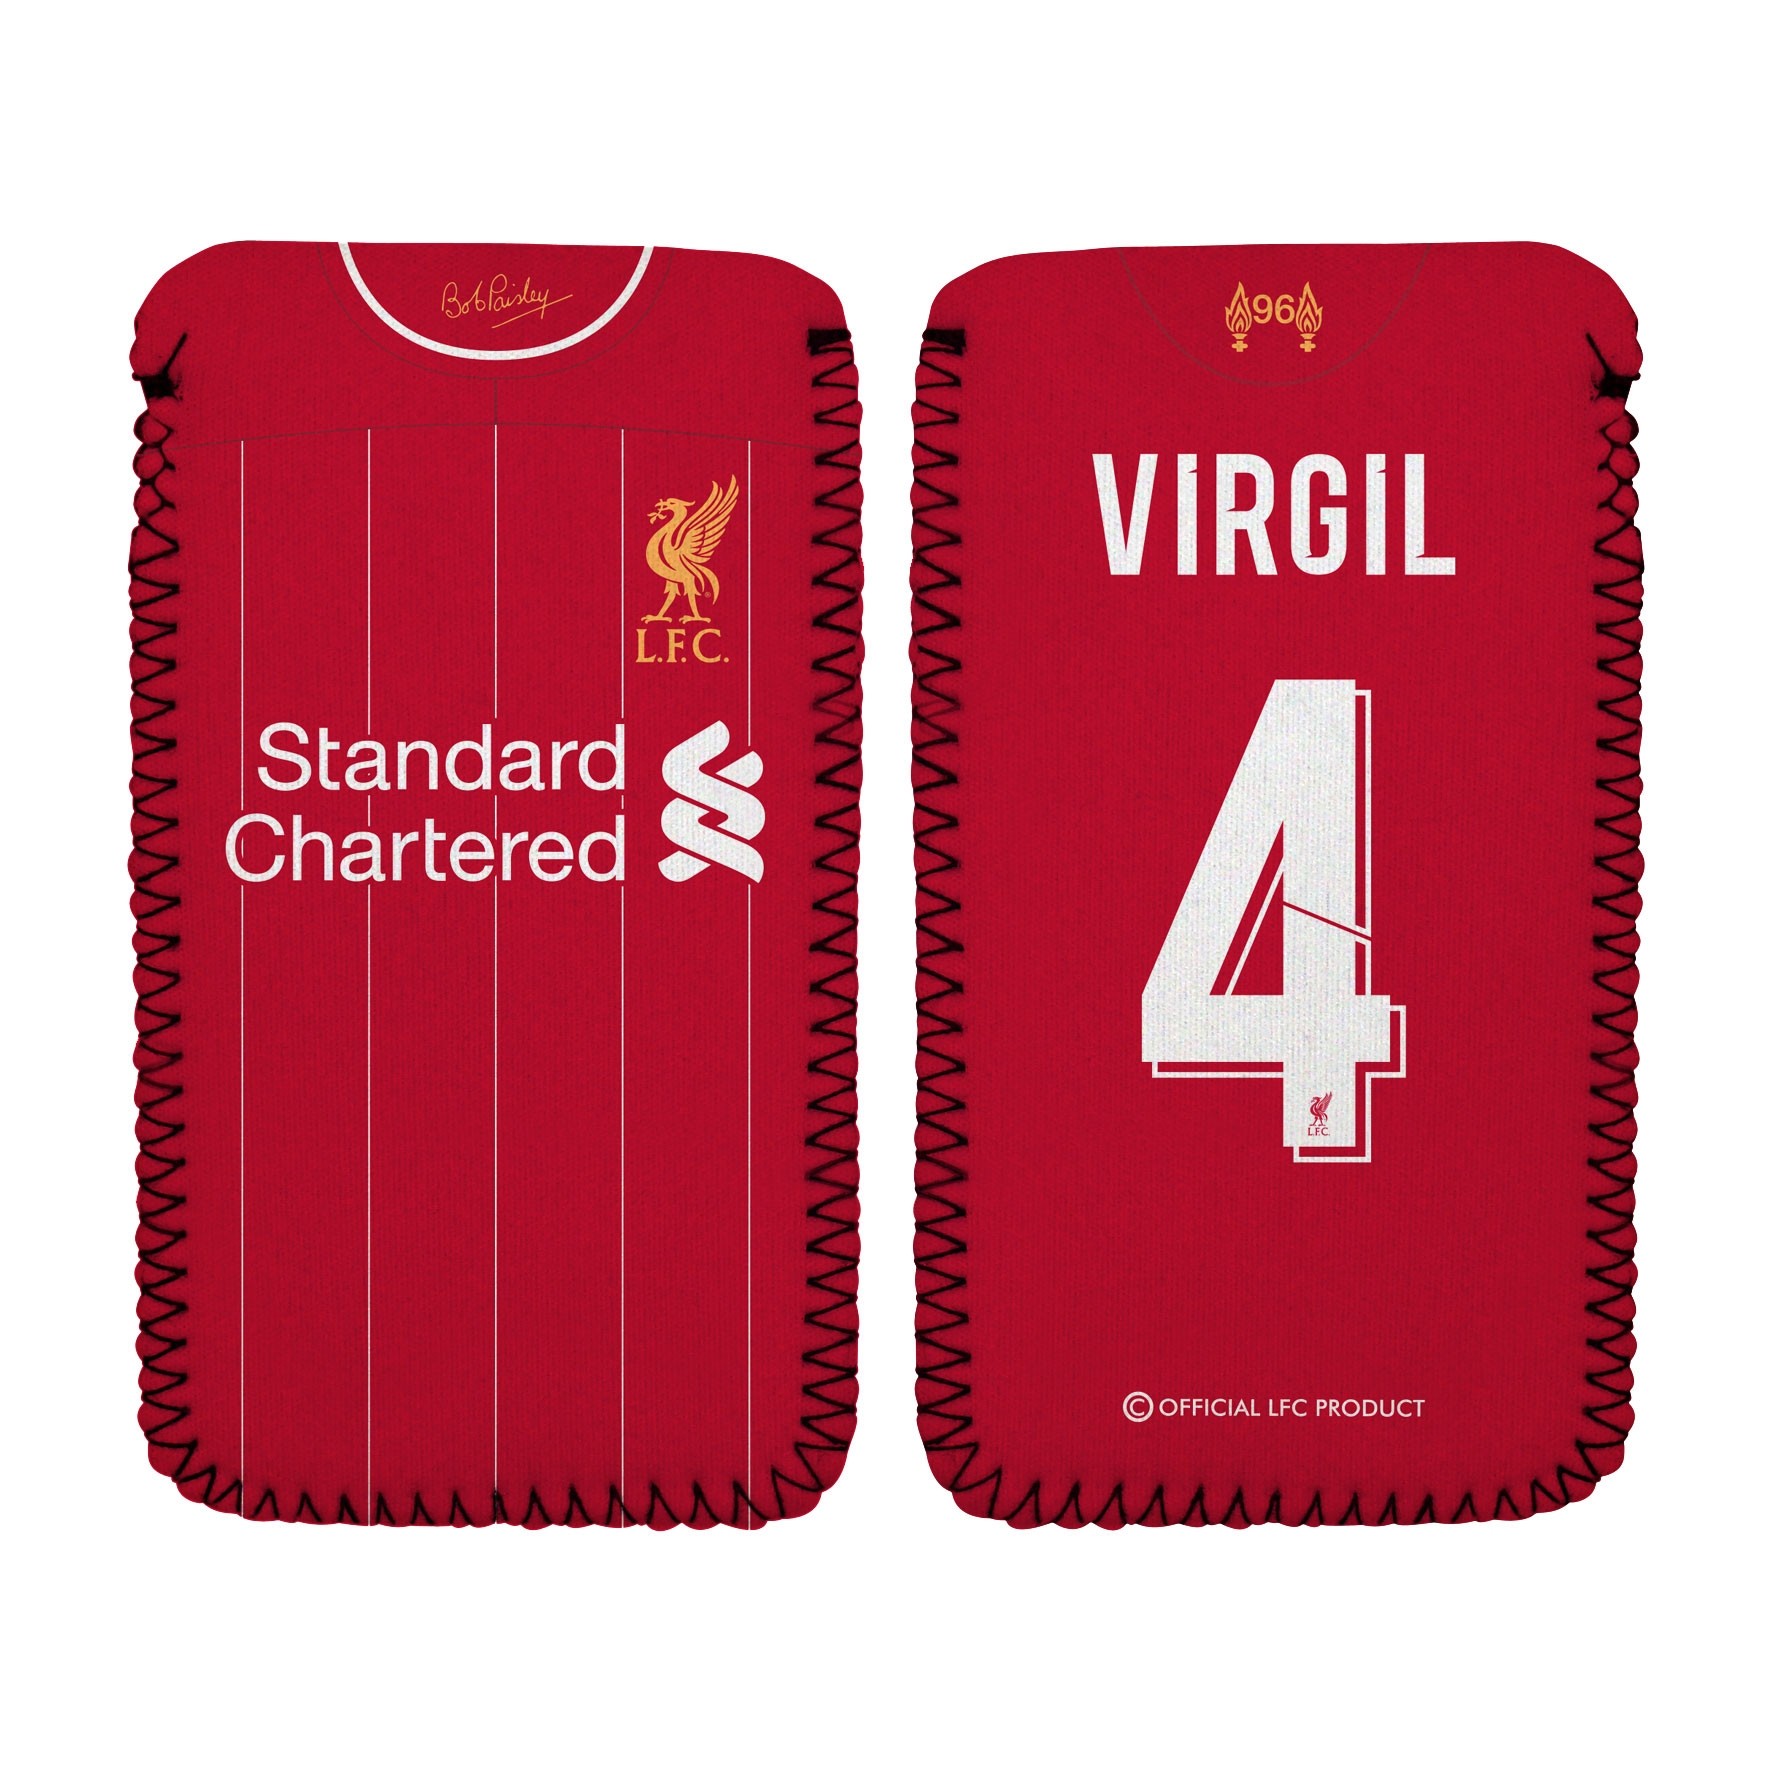 LFC Virgil Phone Sleeve 19/20